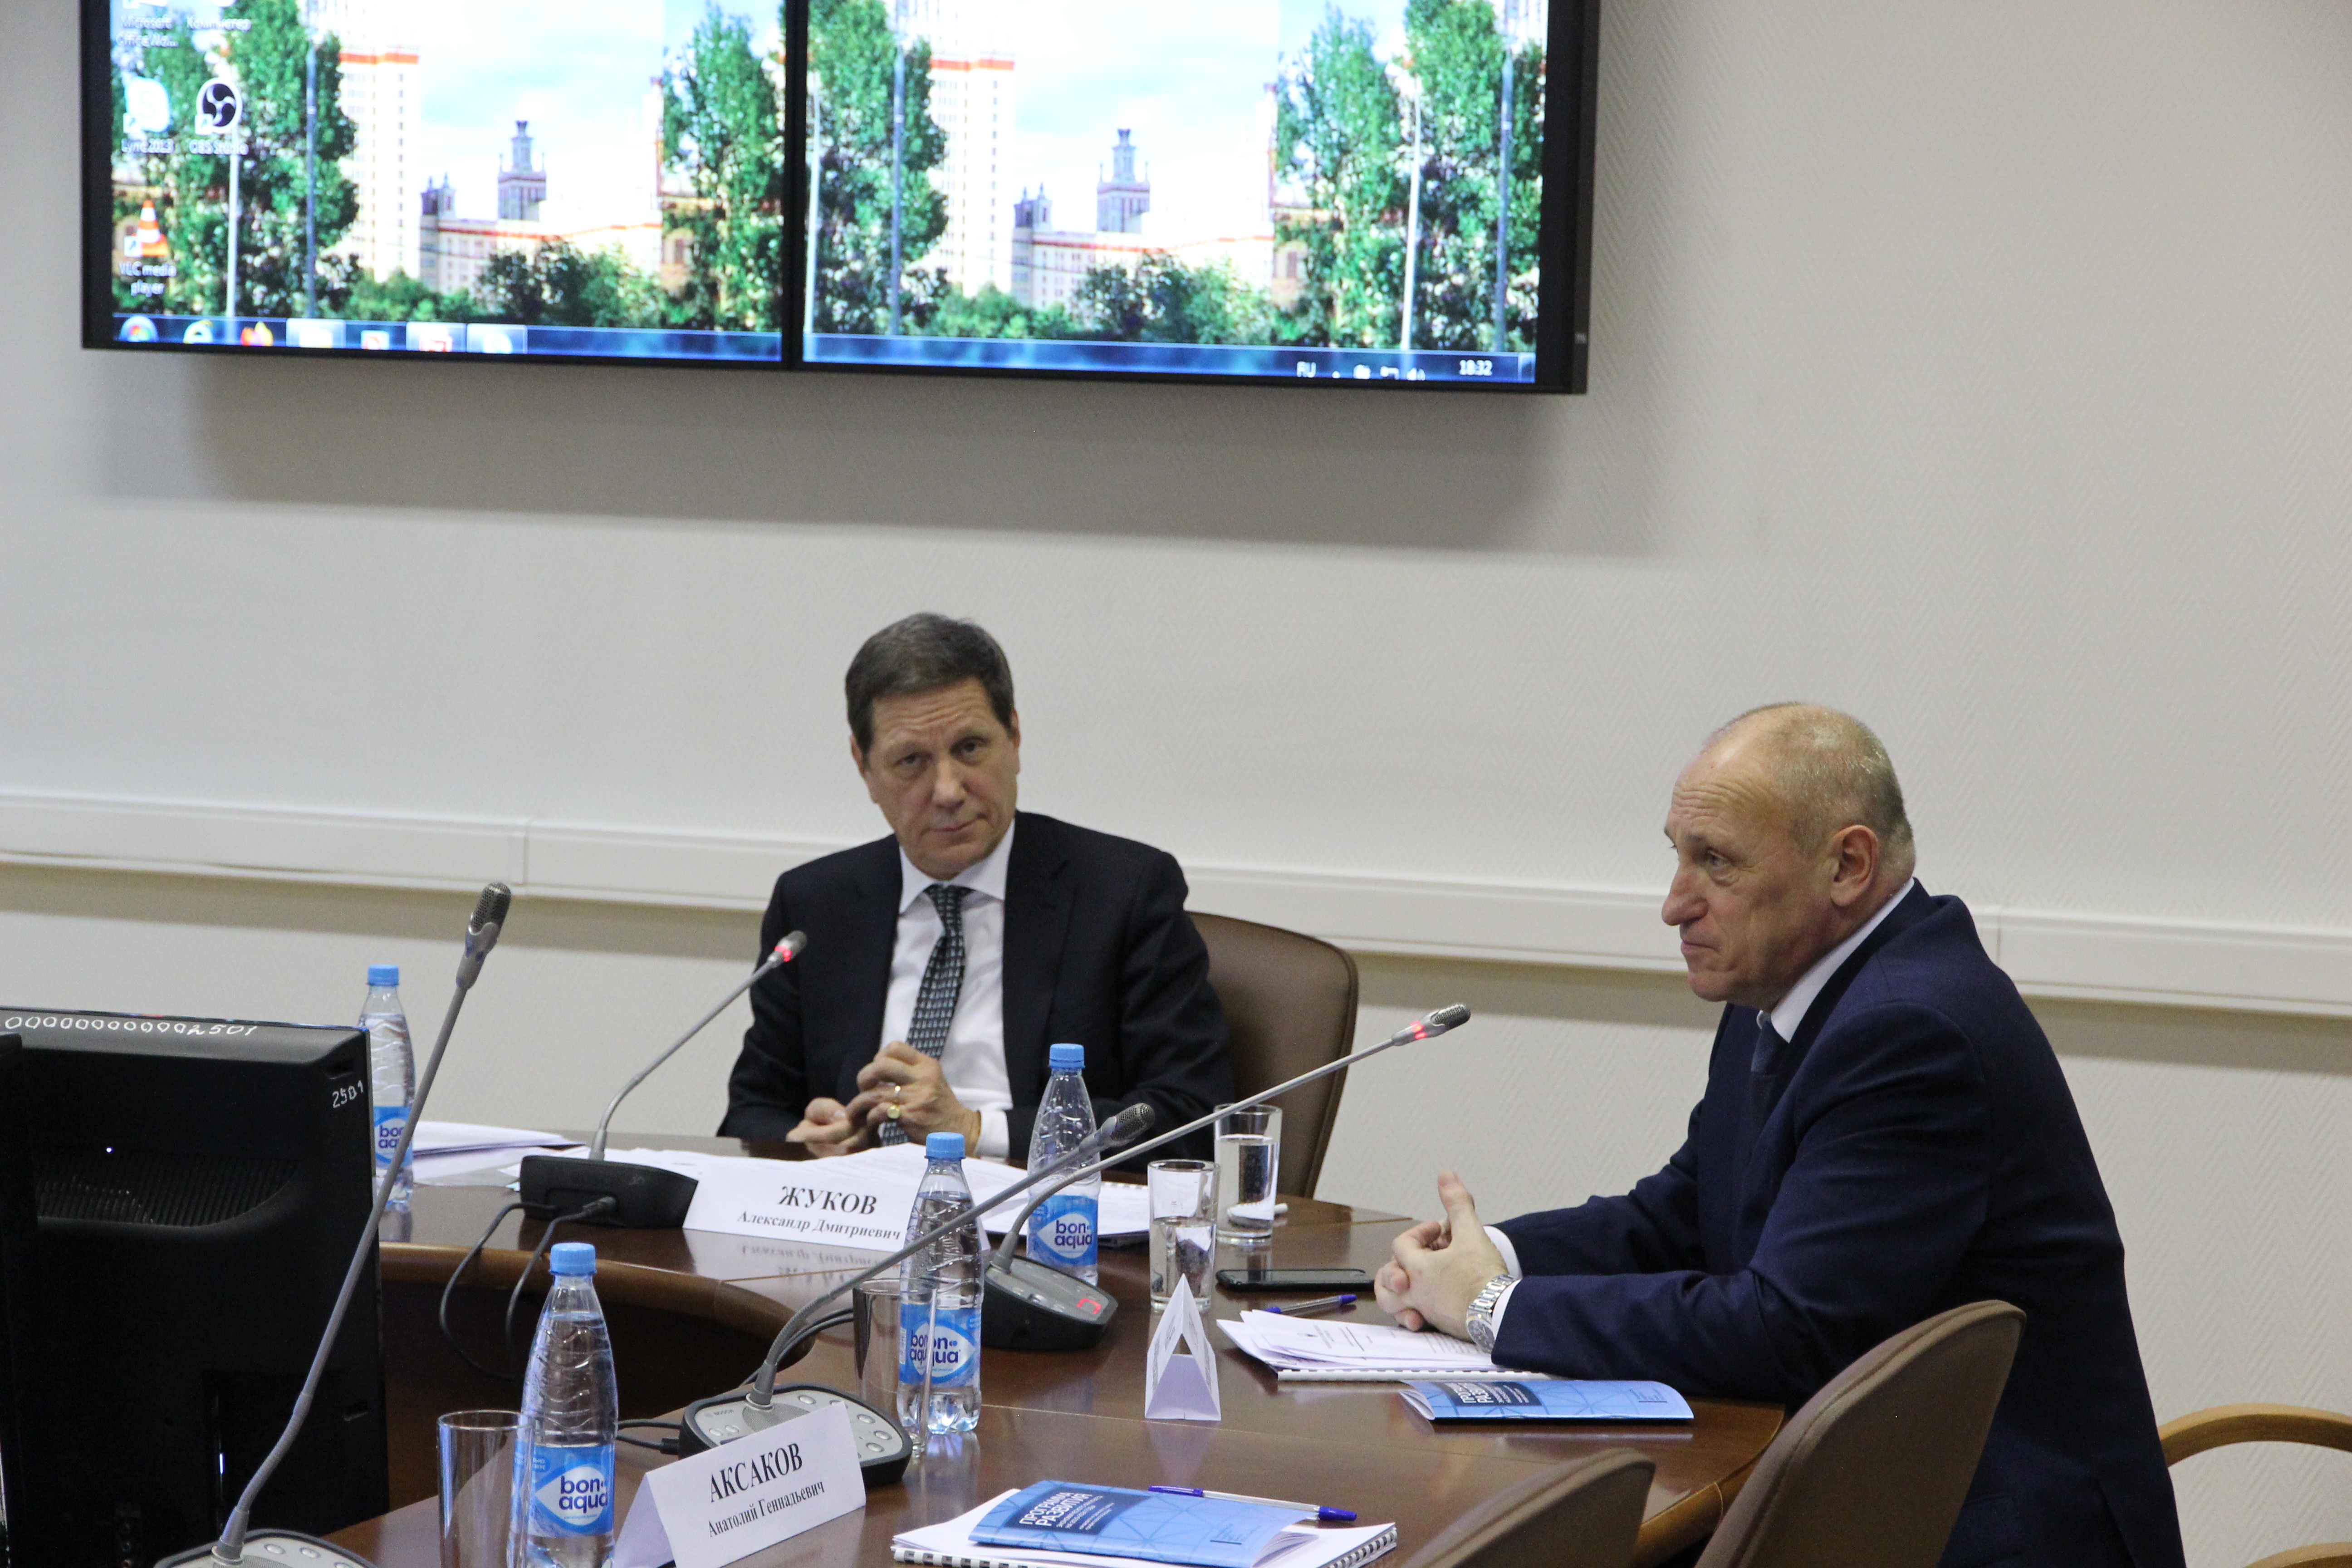 Председатель Попечительского совета А.Д. Жуков и члены совета обсудили вопросы развития науки на ЭФ МГУ